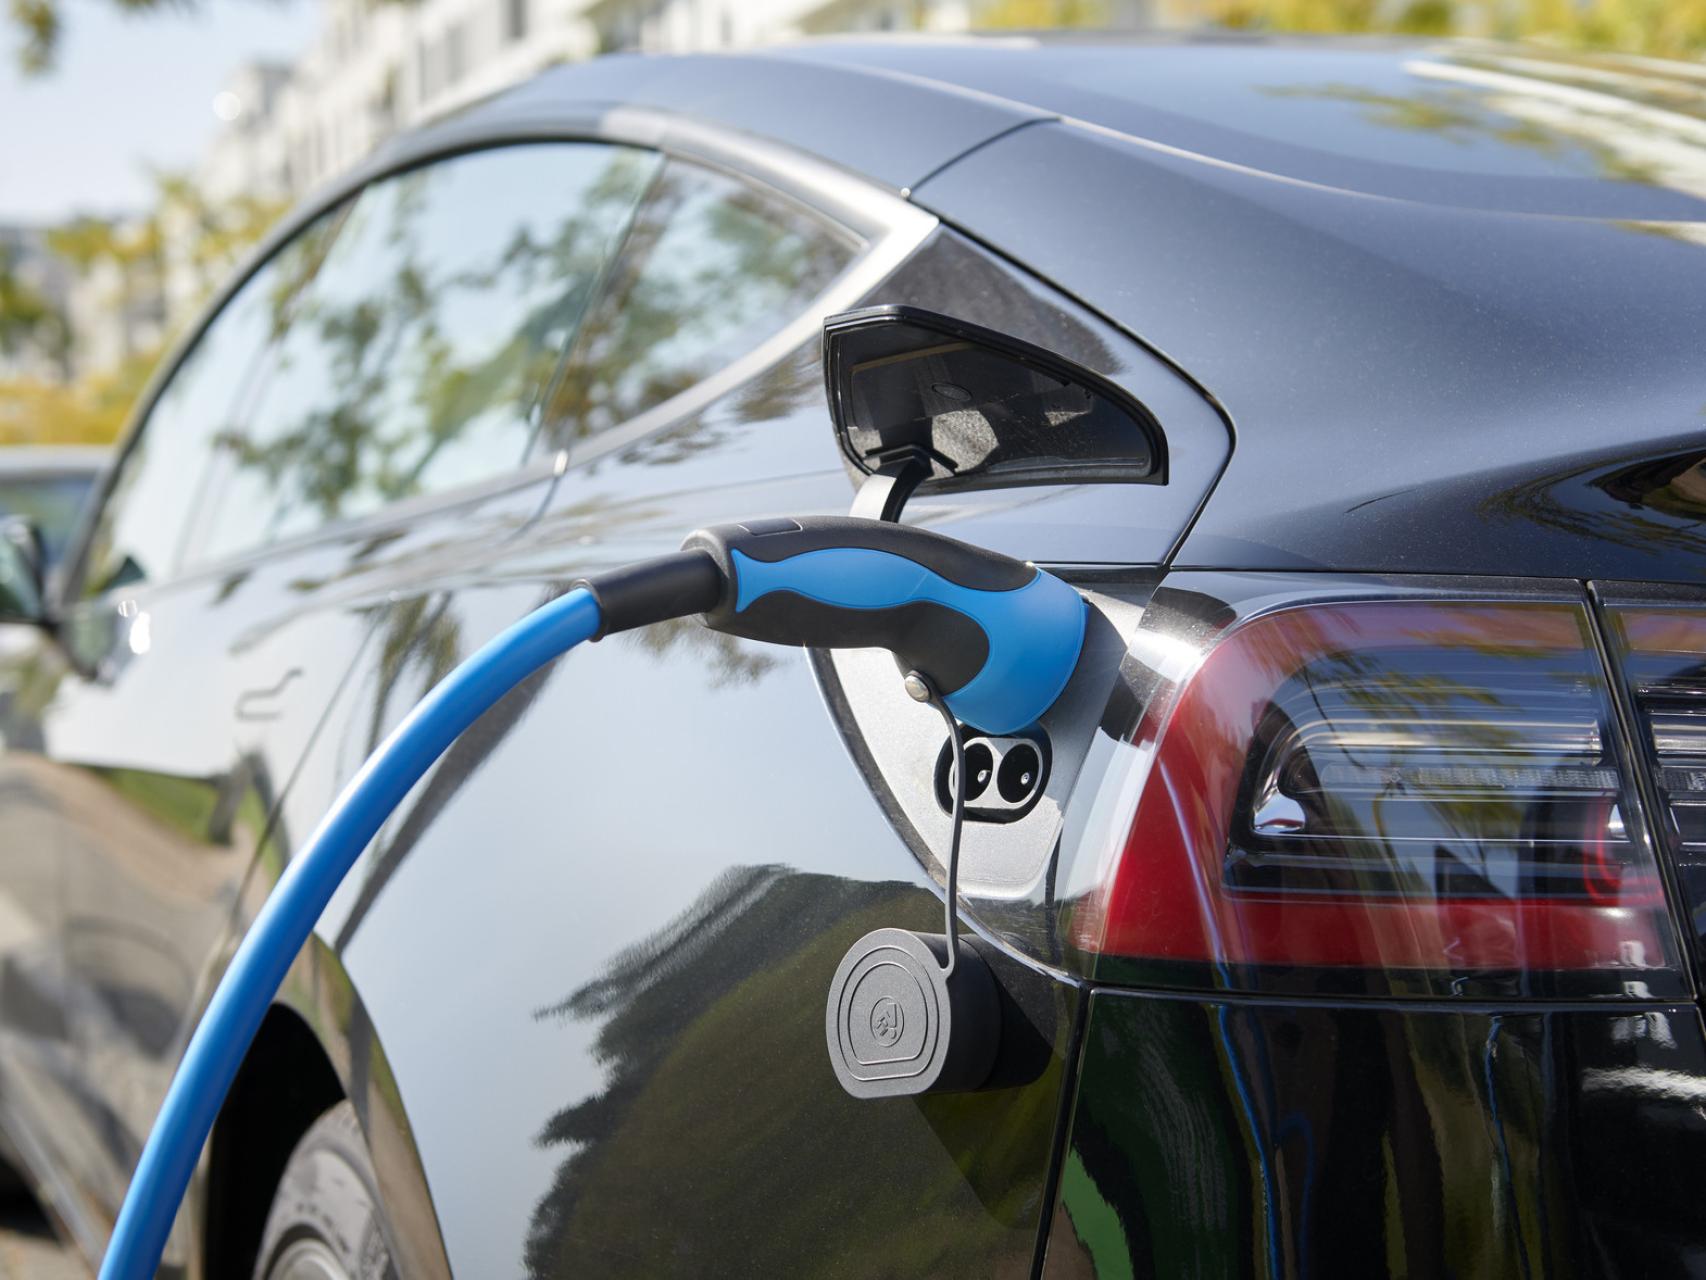 El MG4 se convierte en el coche eléctrico más vendido en abril - Electrico .es